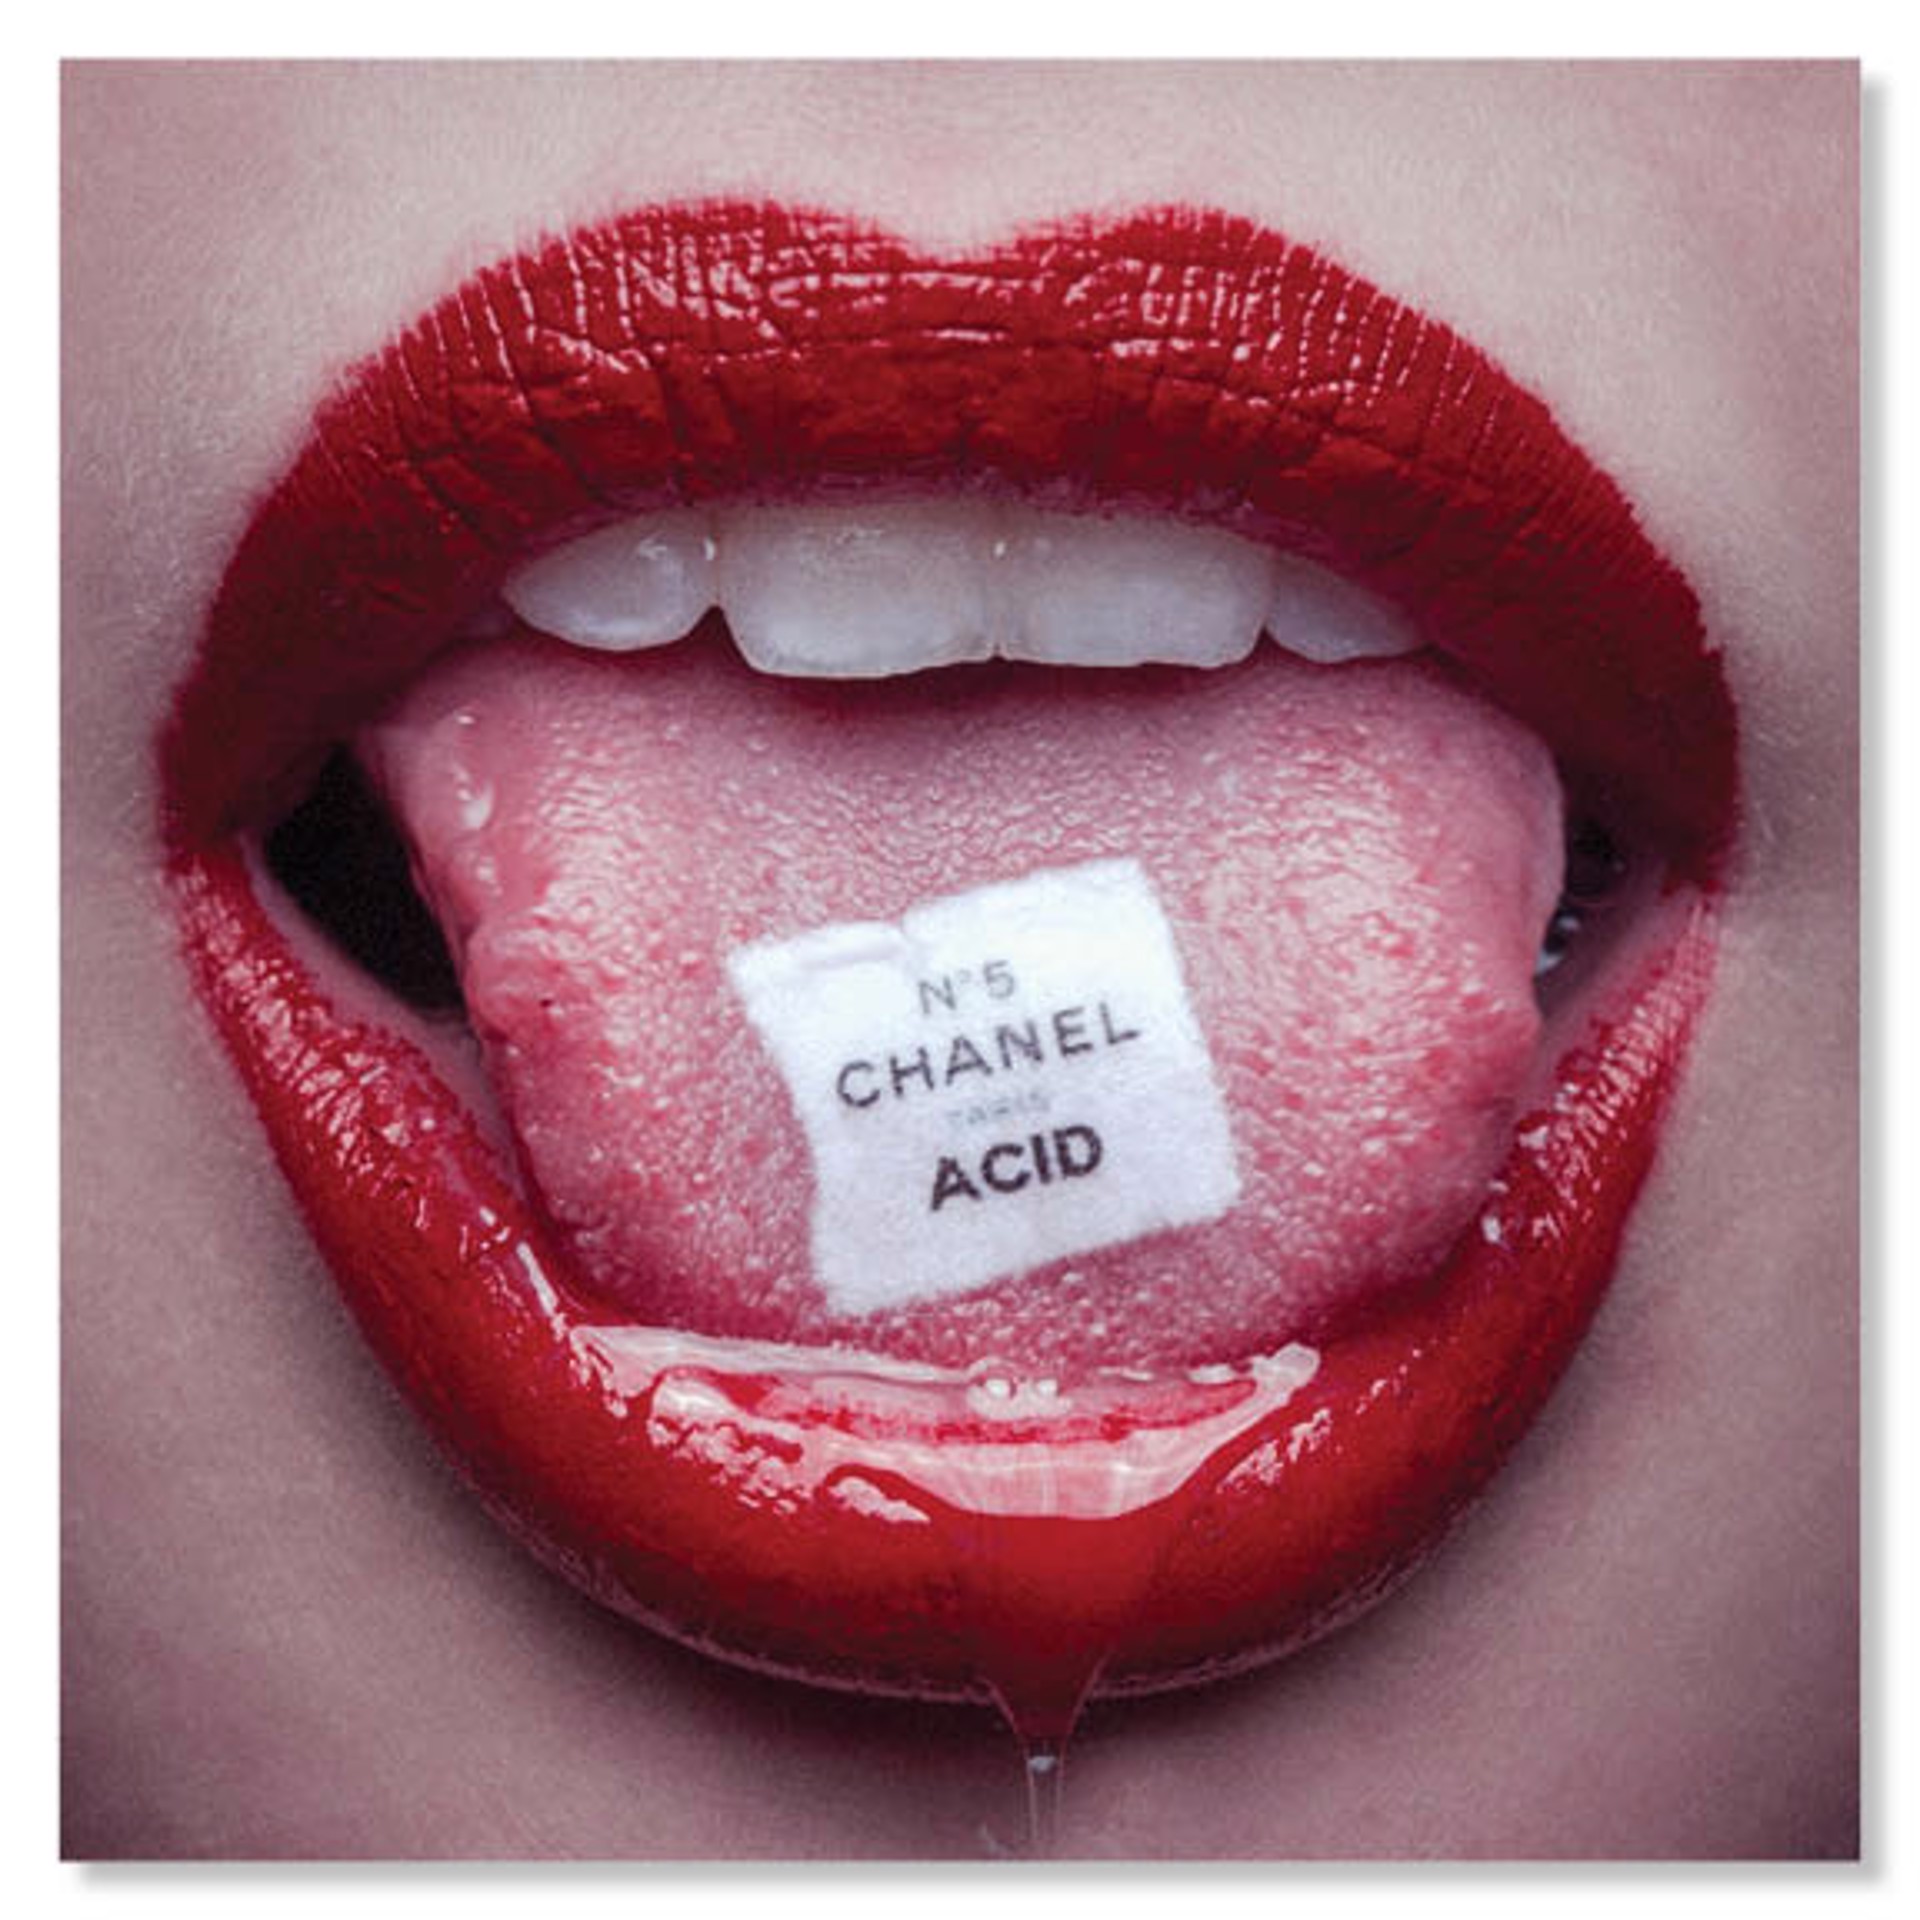 Chanel Acid by Tyler Shields